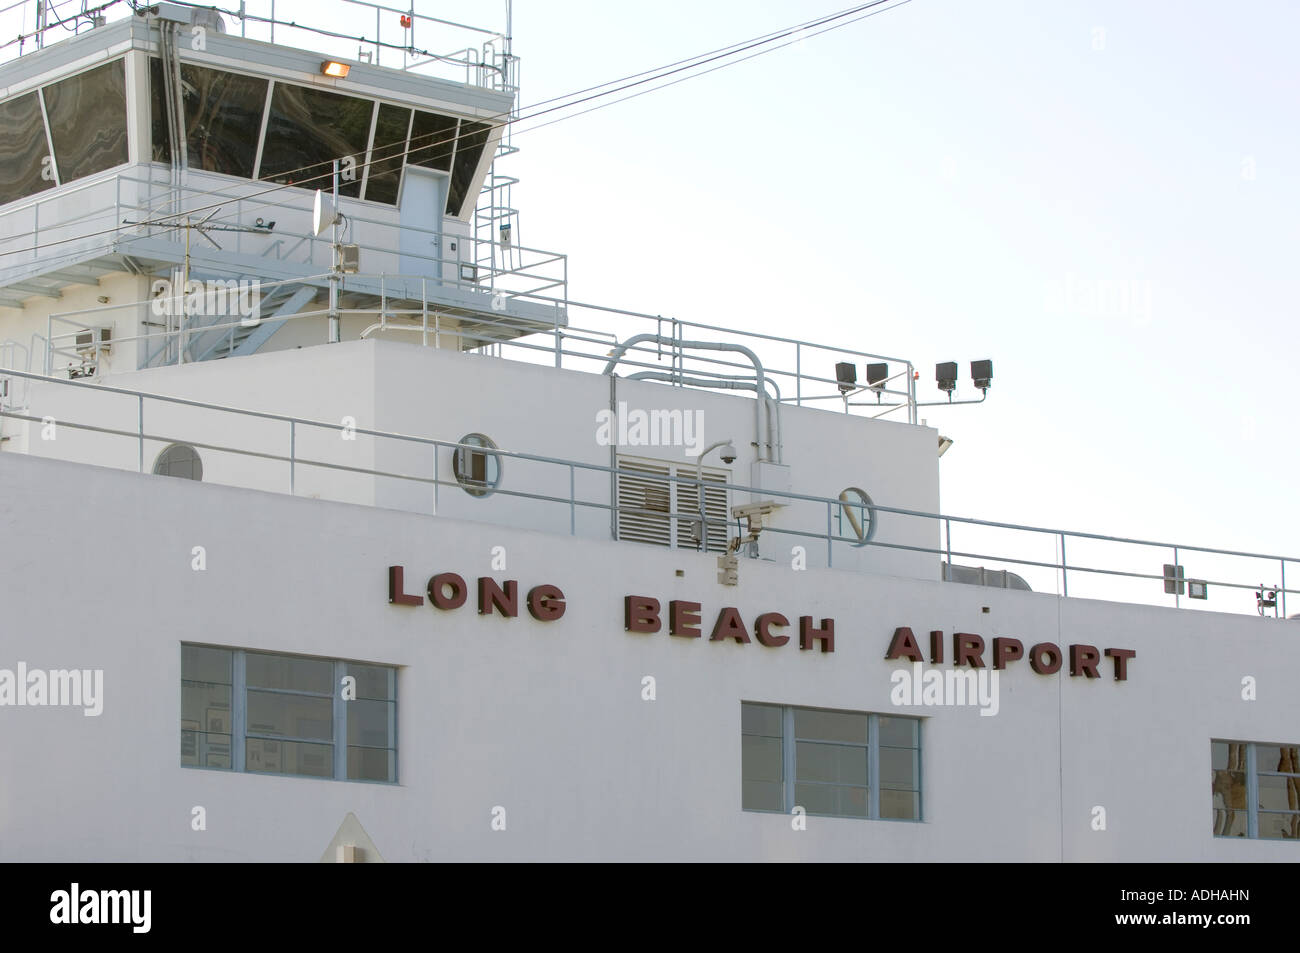 Aeropuerto de Long Beach edificio histórico situado en el sur de California, mostrando el letrero y antigua torre de control Foto de stock